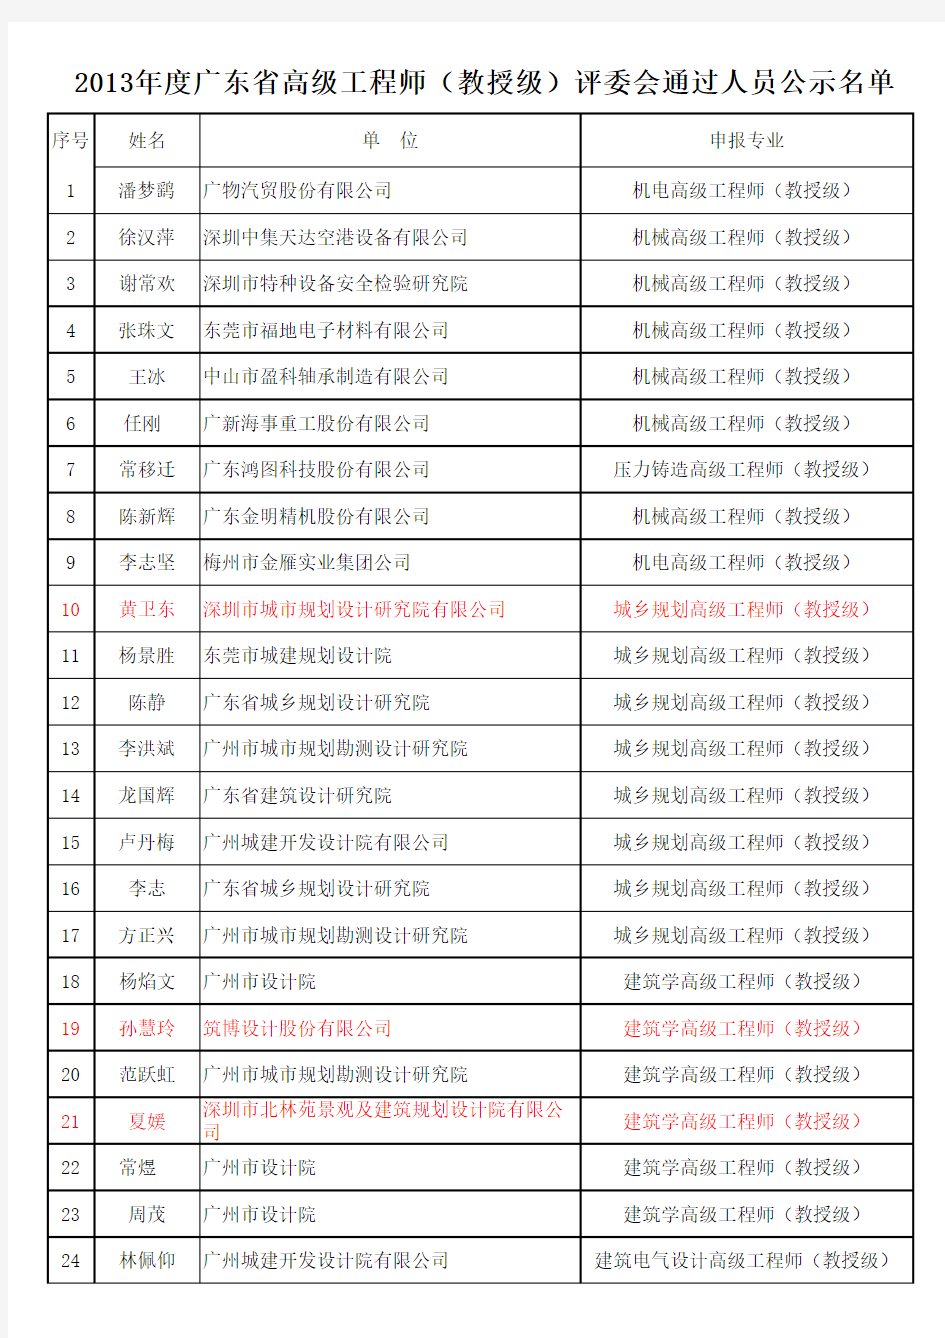 2013年度广东省高级工程师(教授级)评委会评审通过人员网上公示名单